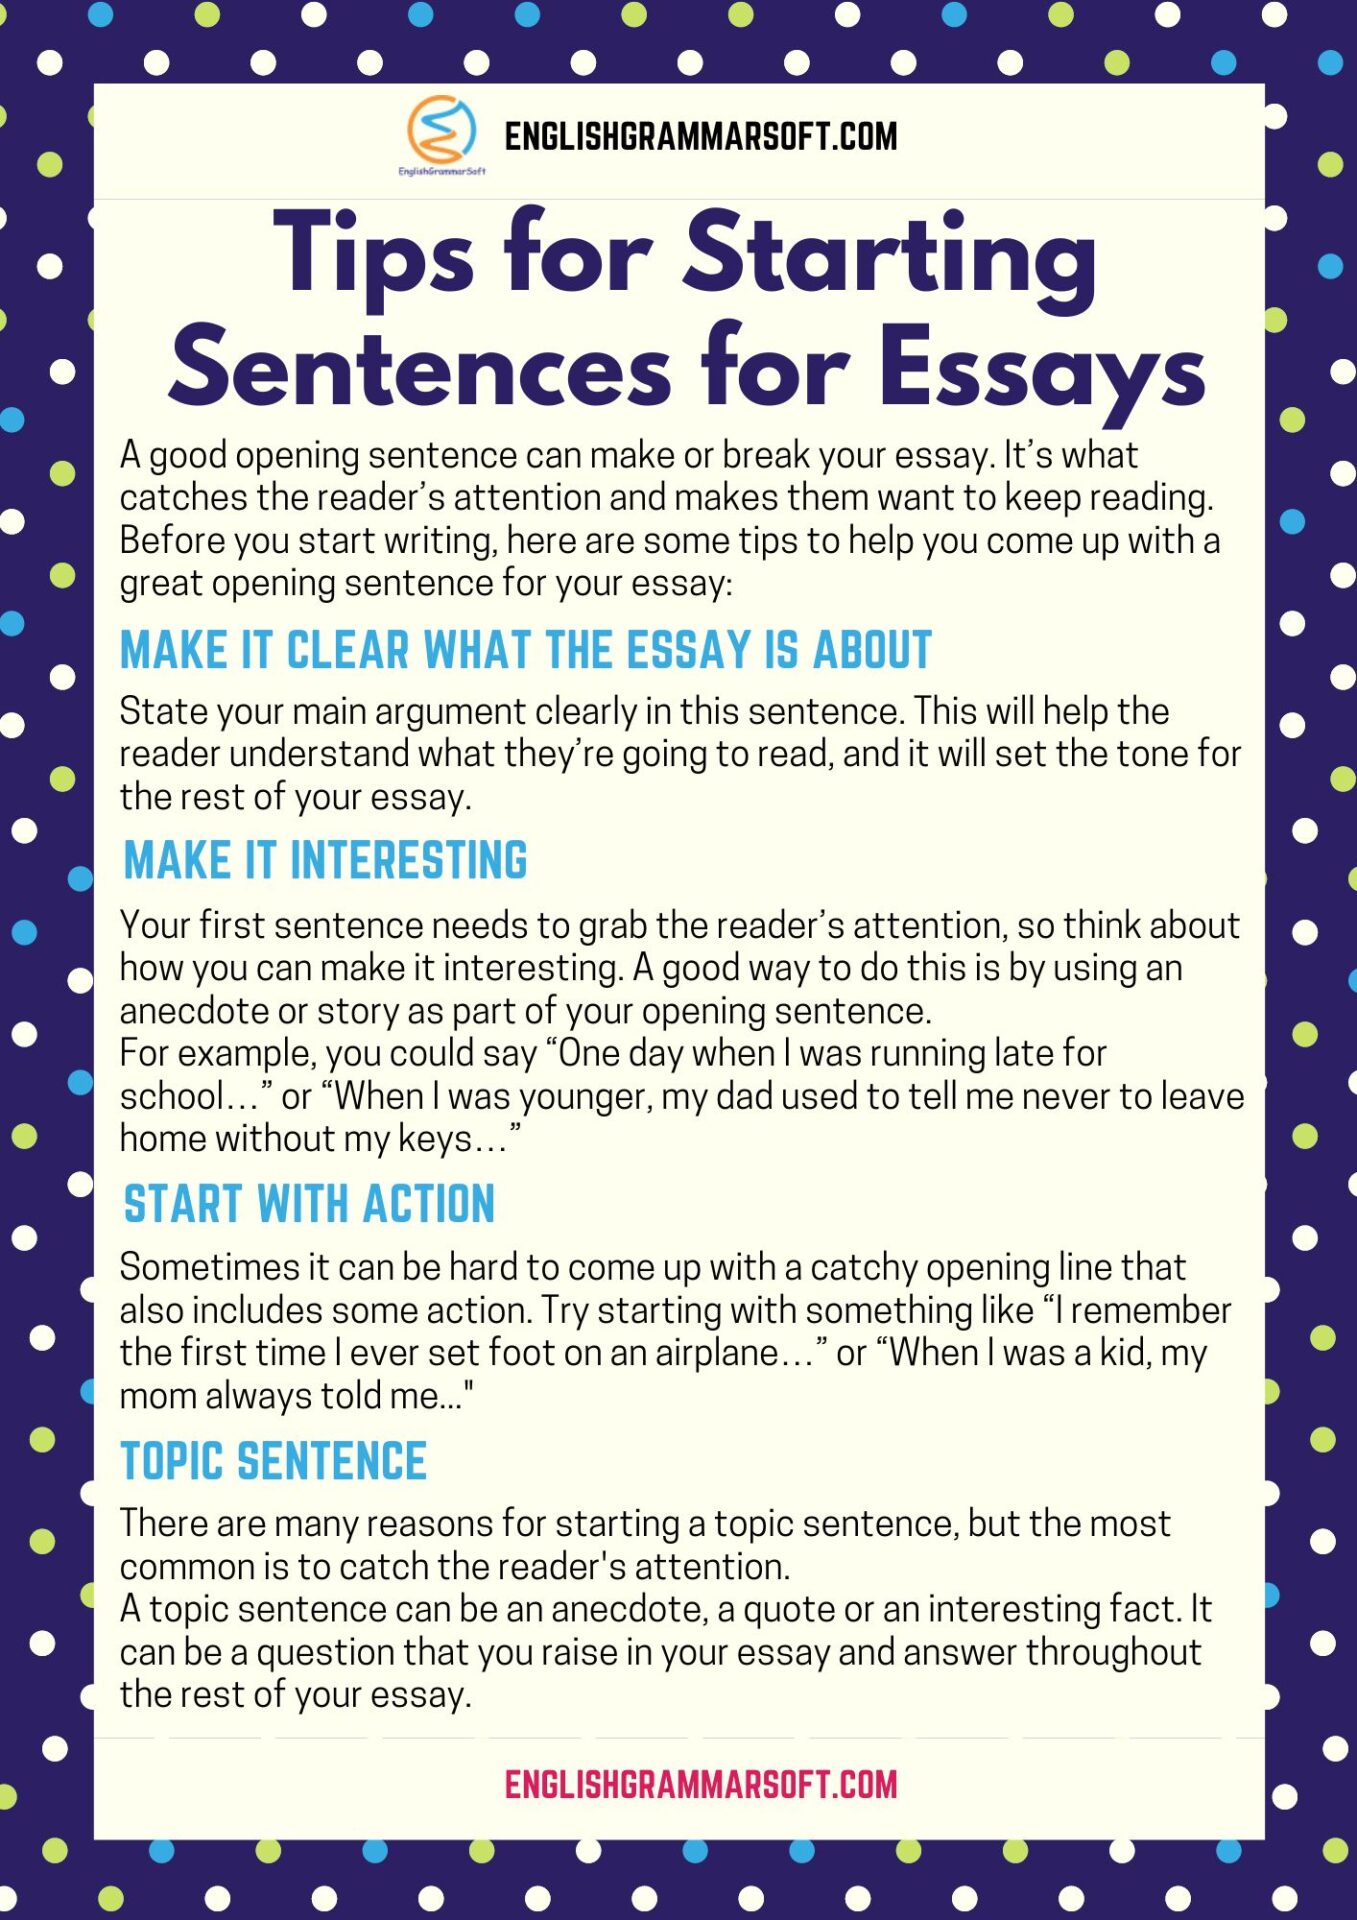 Tips for Starting Sentences for Essays